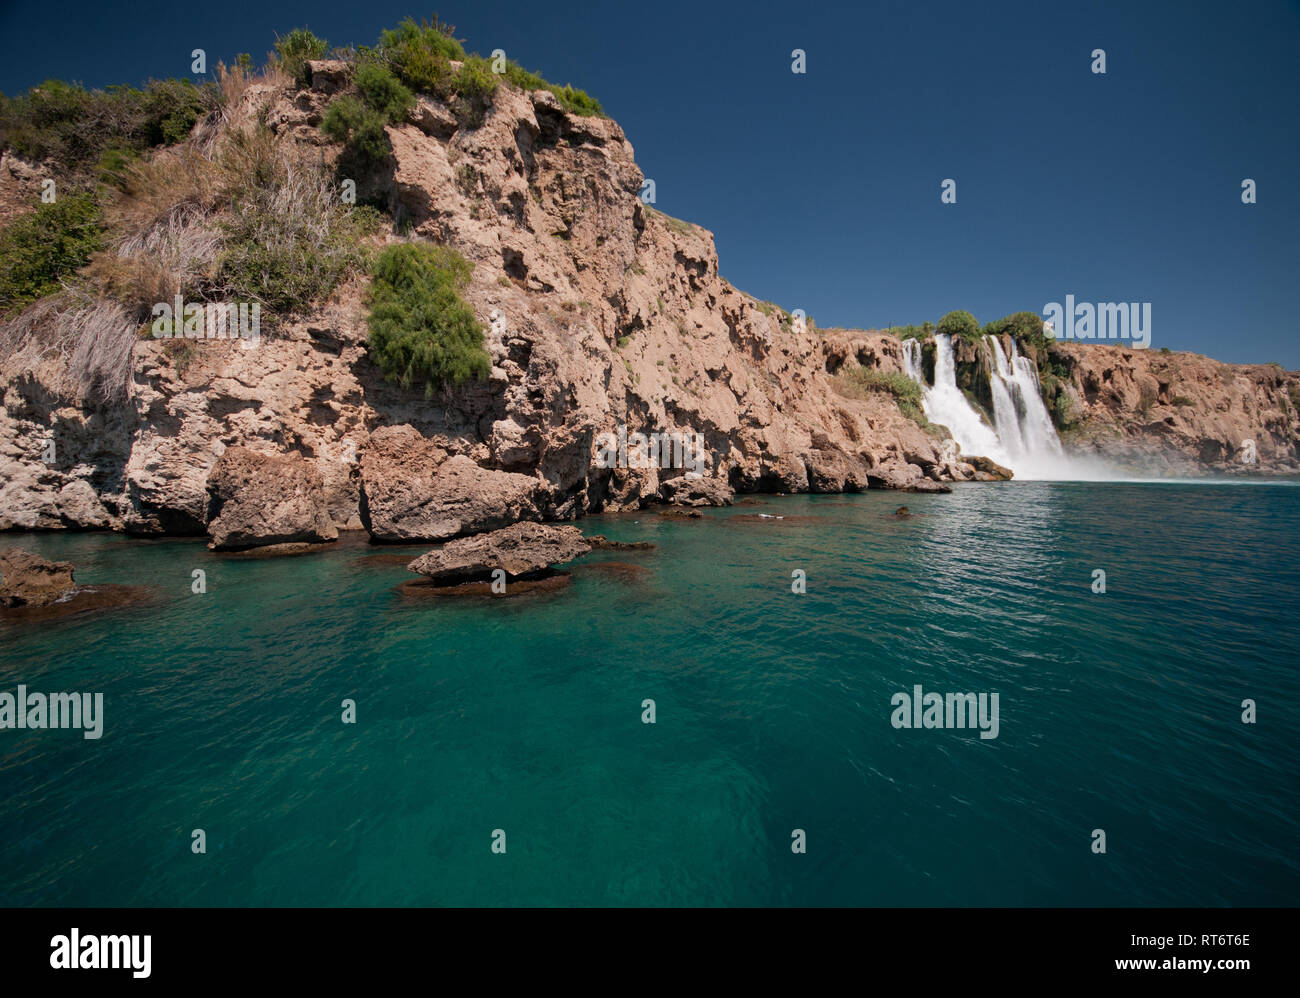 Asia, Turkey, Antalya, Duden waterfall Stock Photo